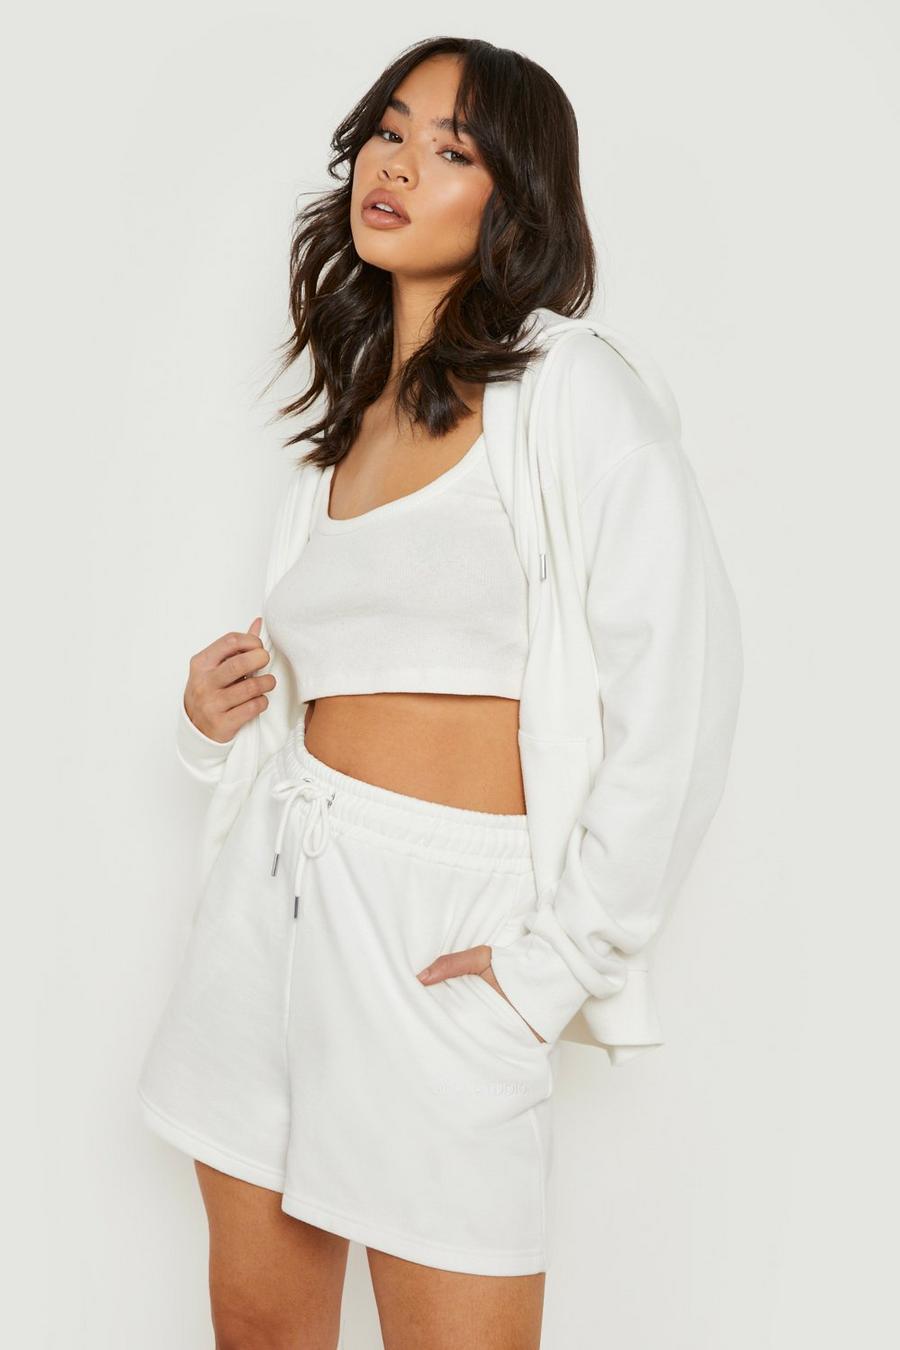 שמנת bianco  חליפת טרנינג שורט עם רוכסן מלא בשילוב כותנת REEL